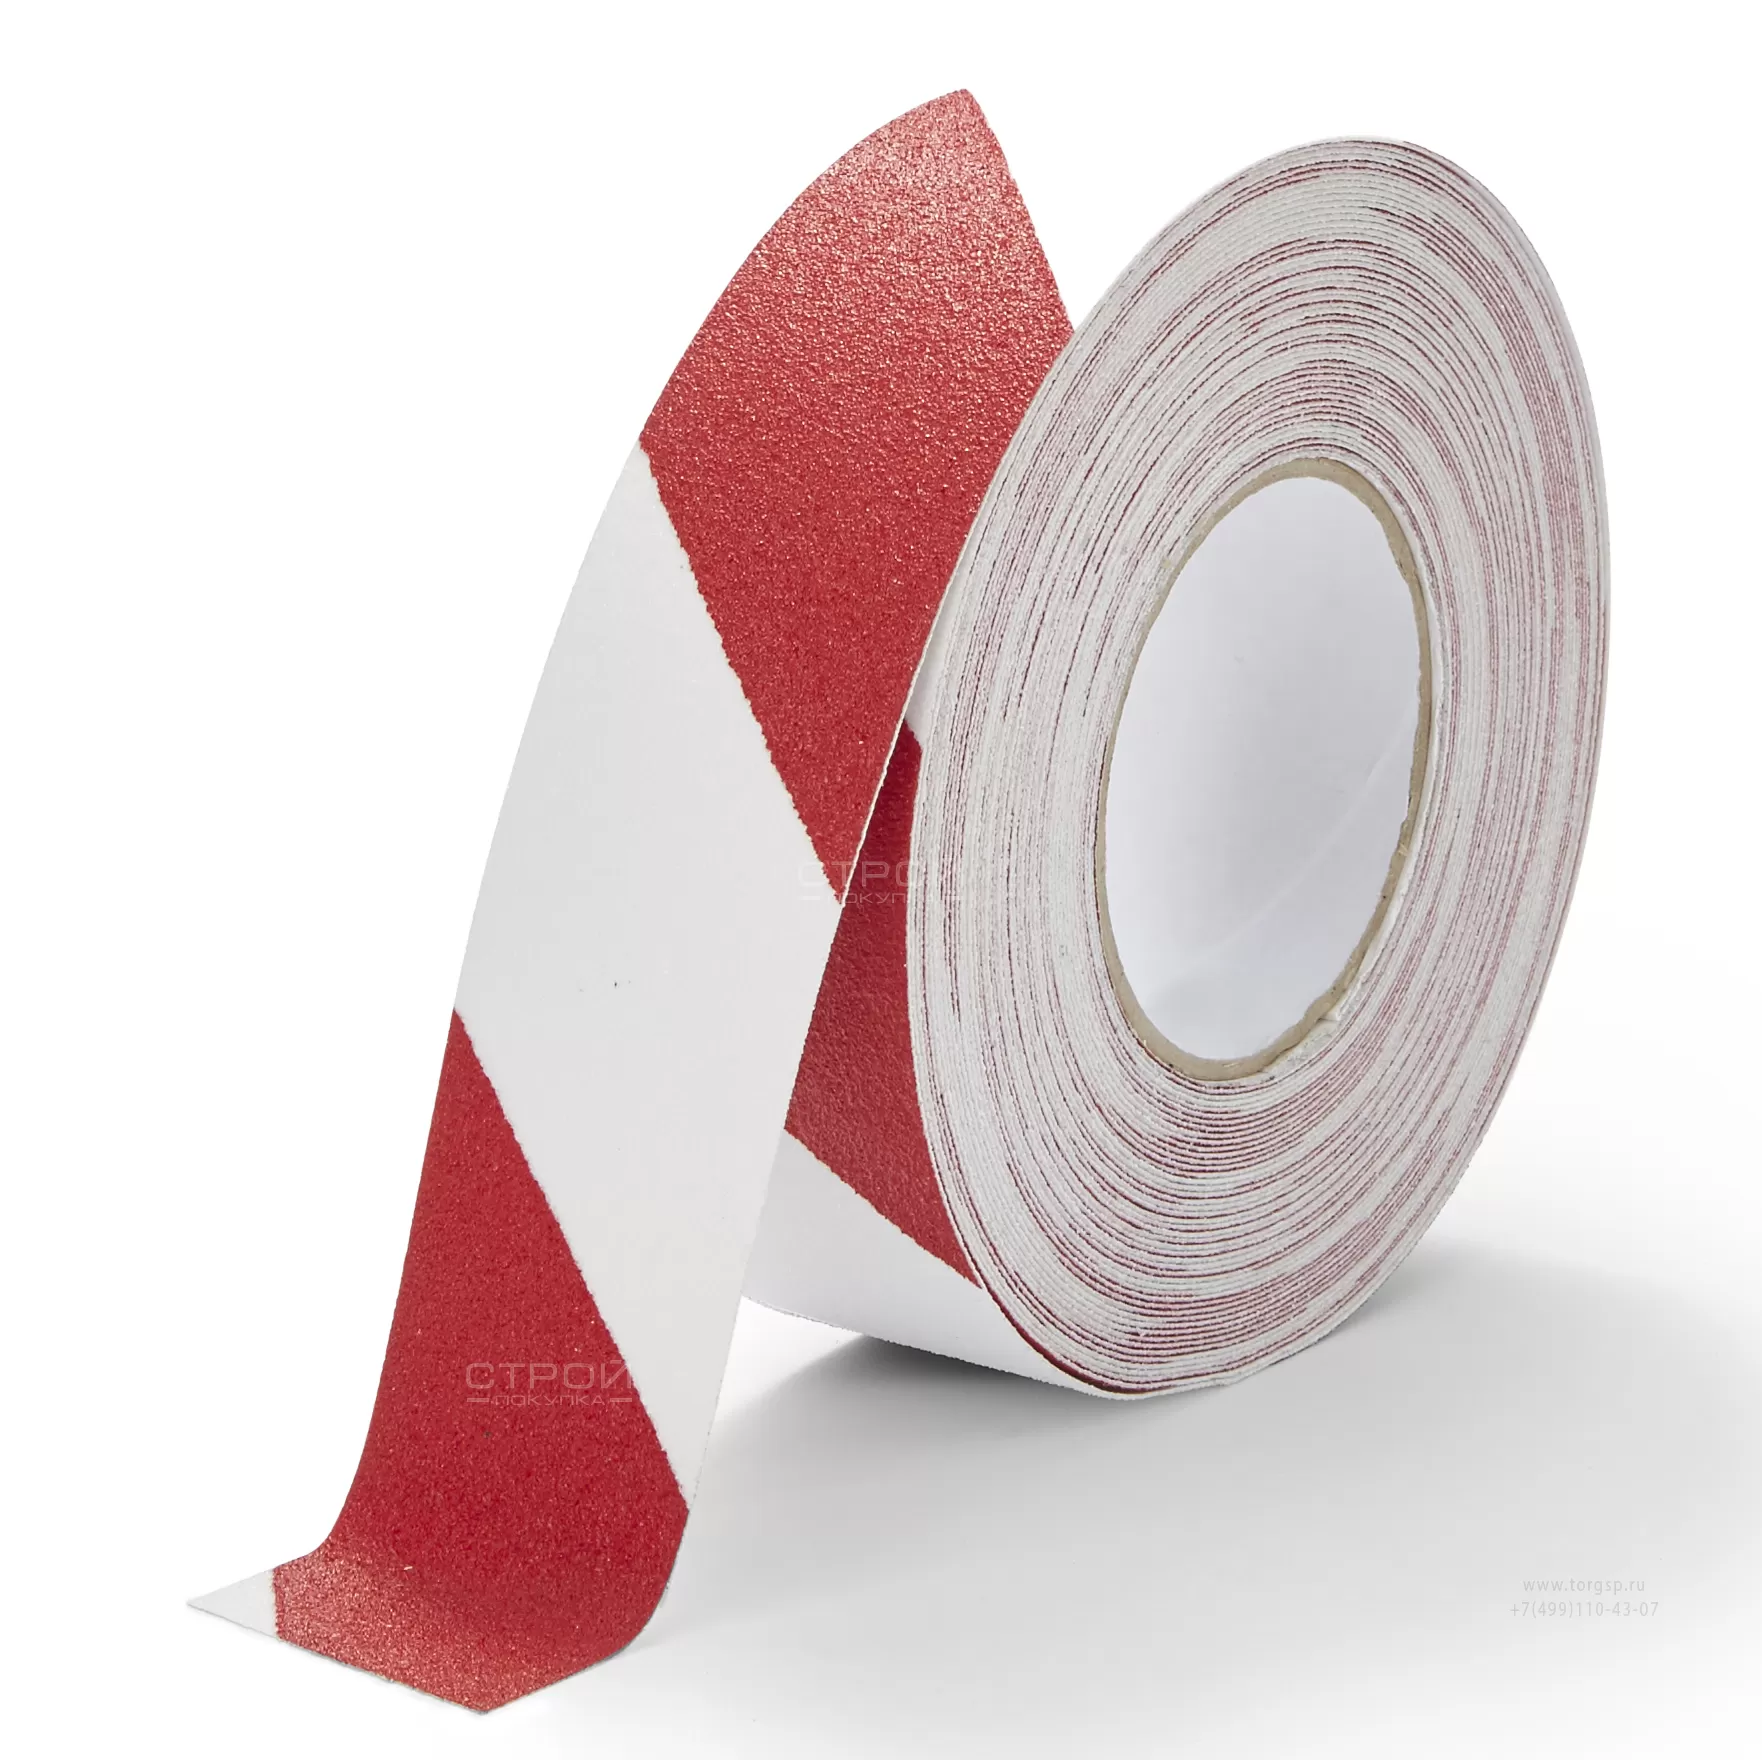 Лента Heskins самоклеющаяся красно-белая с абразивной поверхностью против скольжения, ширина 5 см